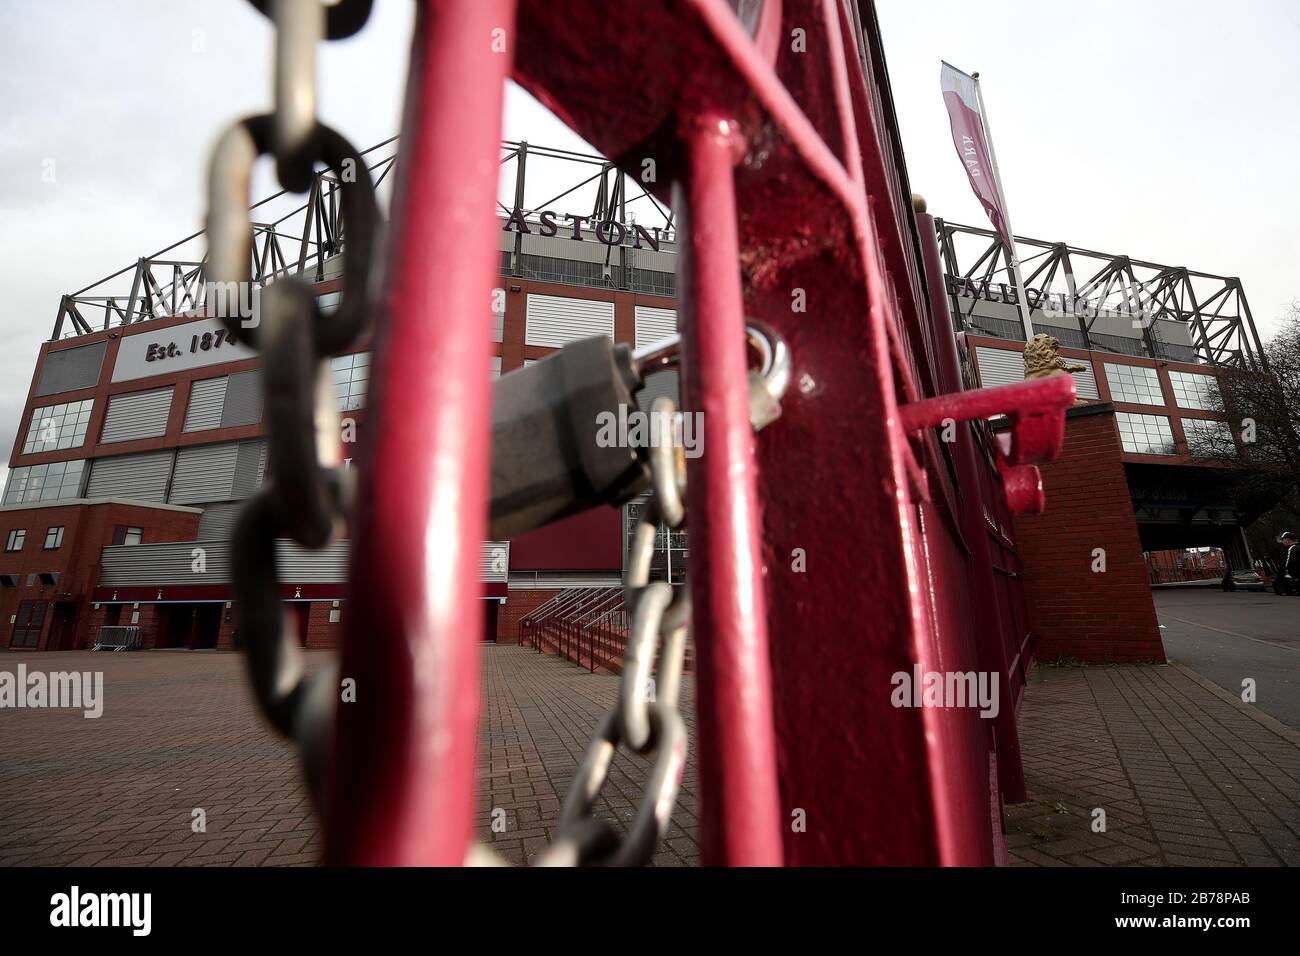 Ein allgemeiner Blick auf das Stadion hinter verschlossenen Toren im Villa Park, der Heimat des Aston Villa Football Club, nach der gestrigen Ankündigung, dass die Premier League alle Spiele bis Samstag, den 4. April 2020 ausgesetzt hat. Stockfoto